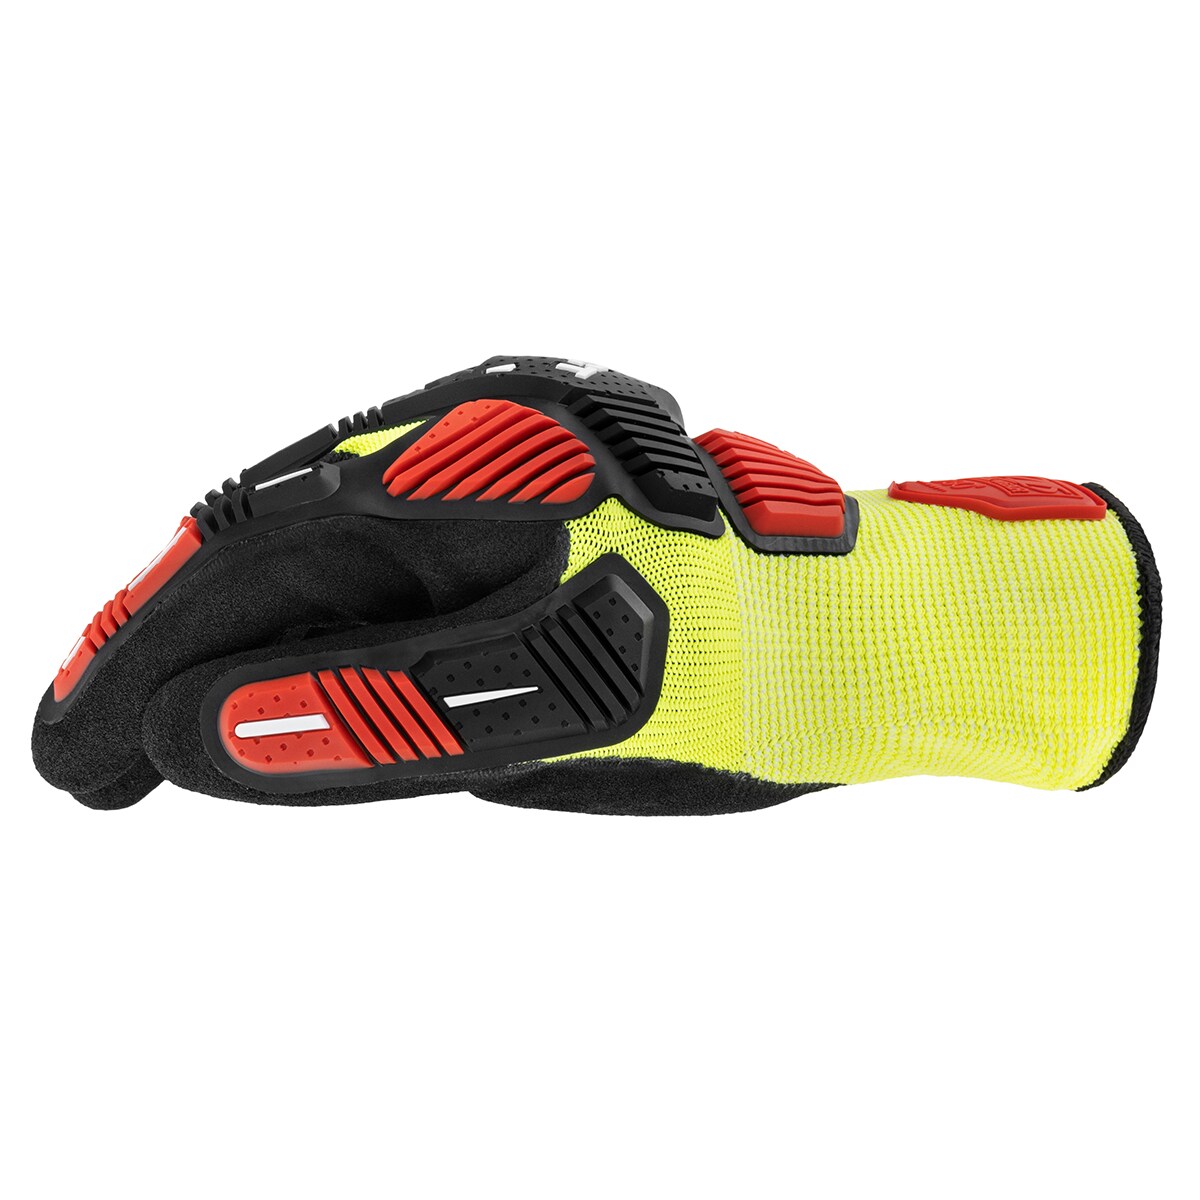 Rękawice taktyczne Mechanix Wear M-Pact Hi-Viz CR3A3 - Yellow/Red